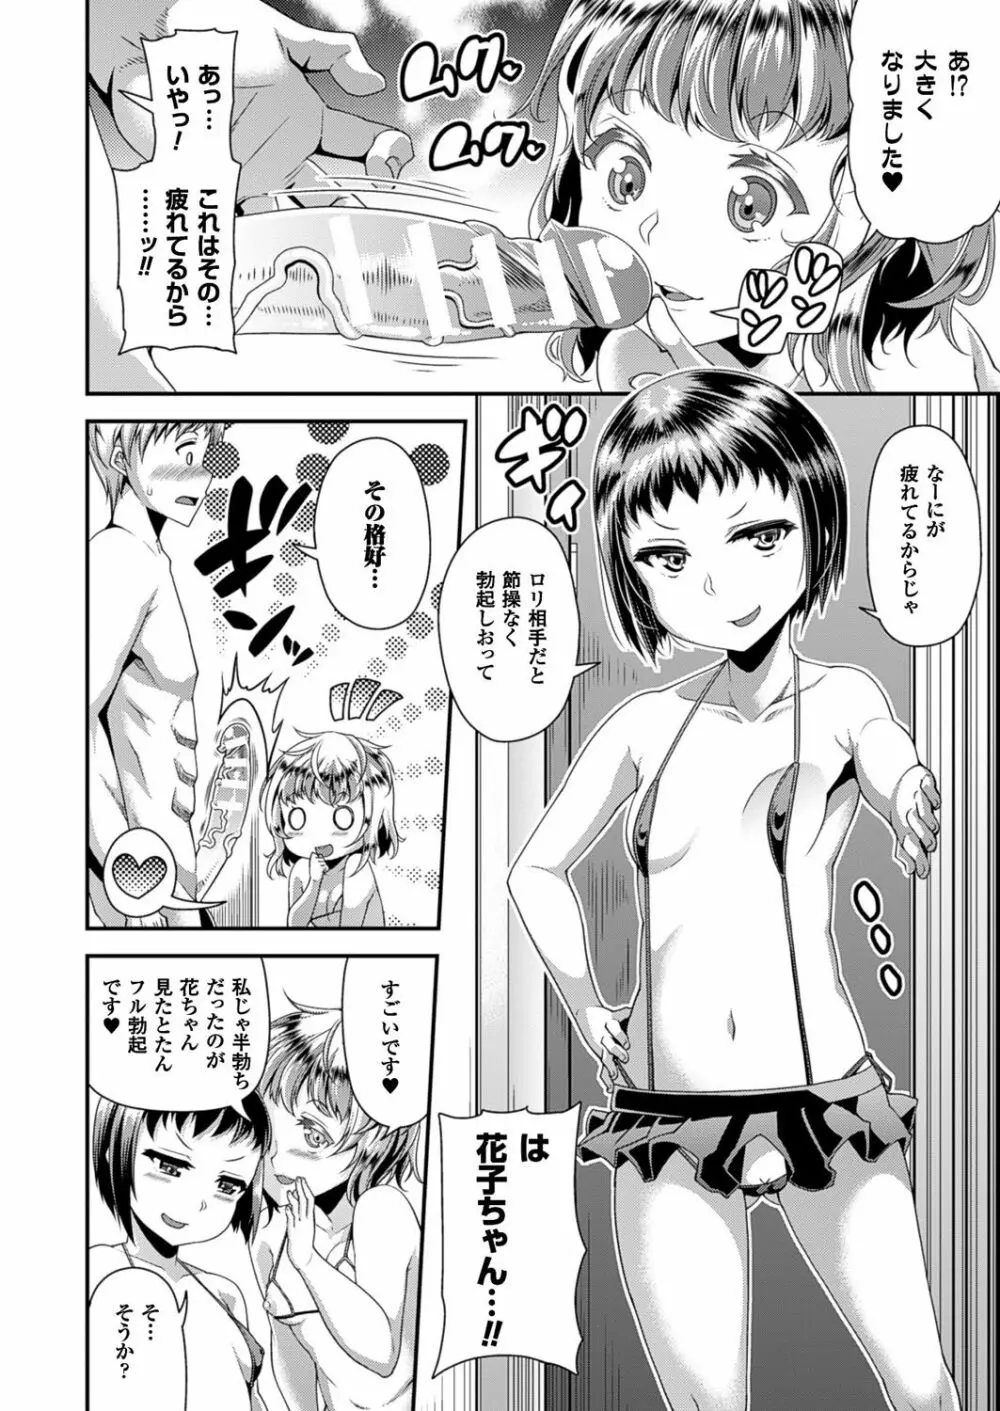 Toshi Densetsu Series Ch. 01-03 45ページ